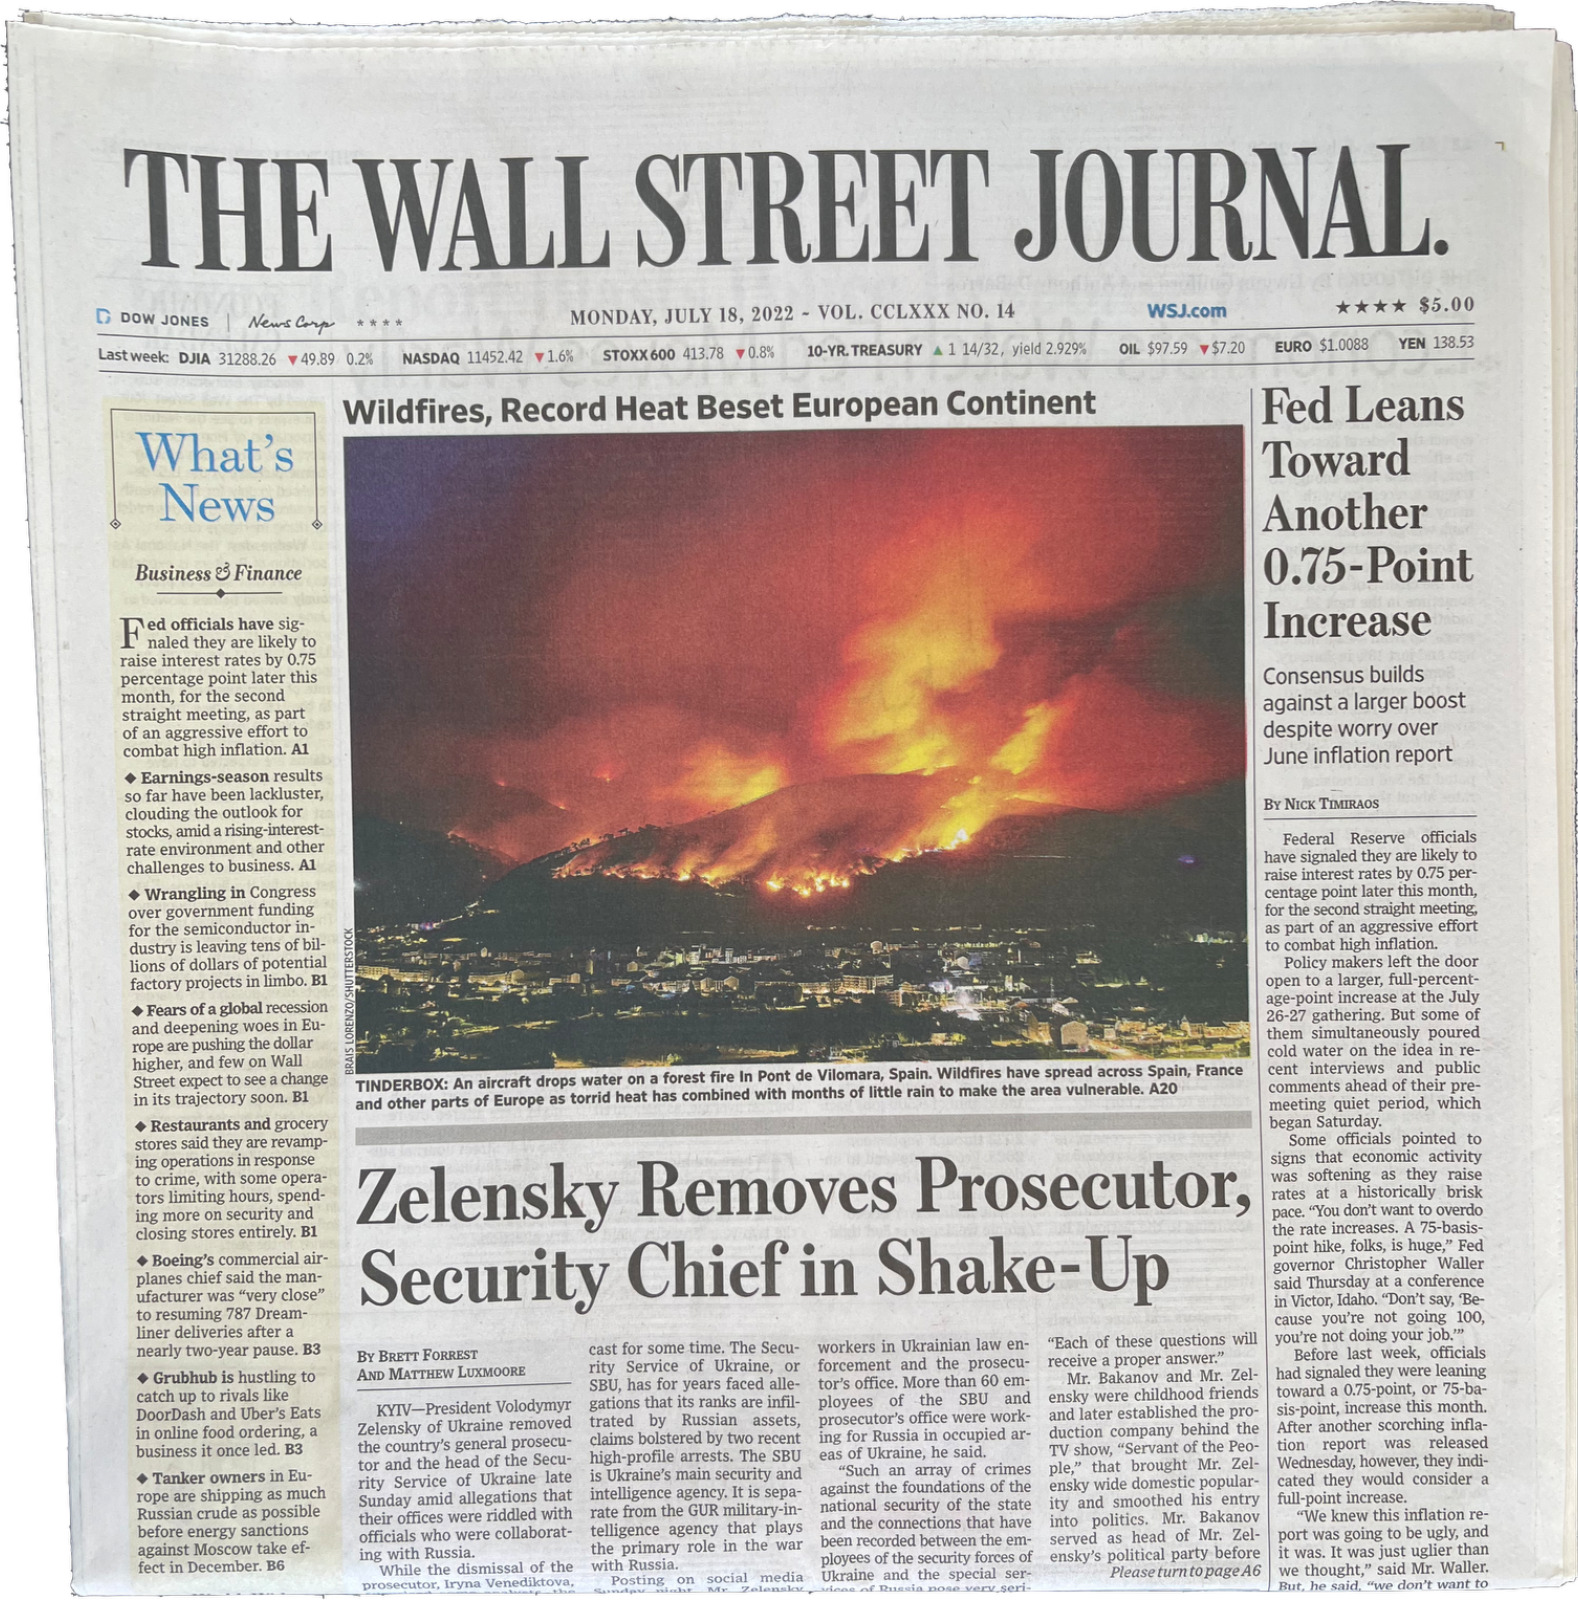 Wall Street Journal - July 18, 2022 - Volume CCLXXX NO. 14